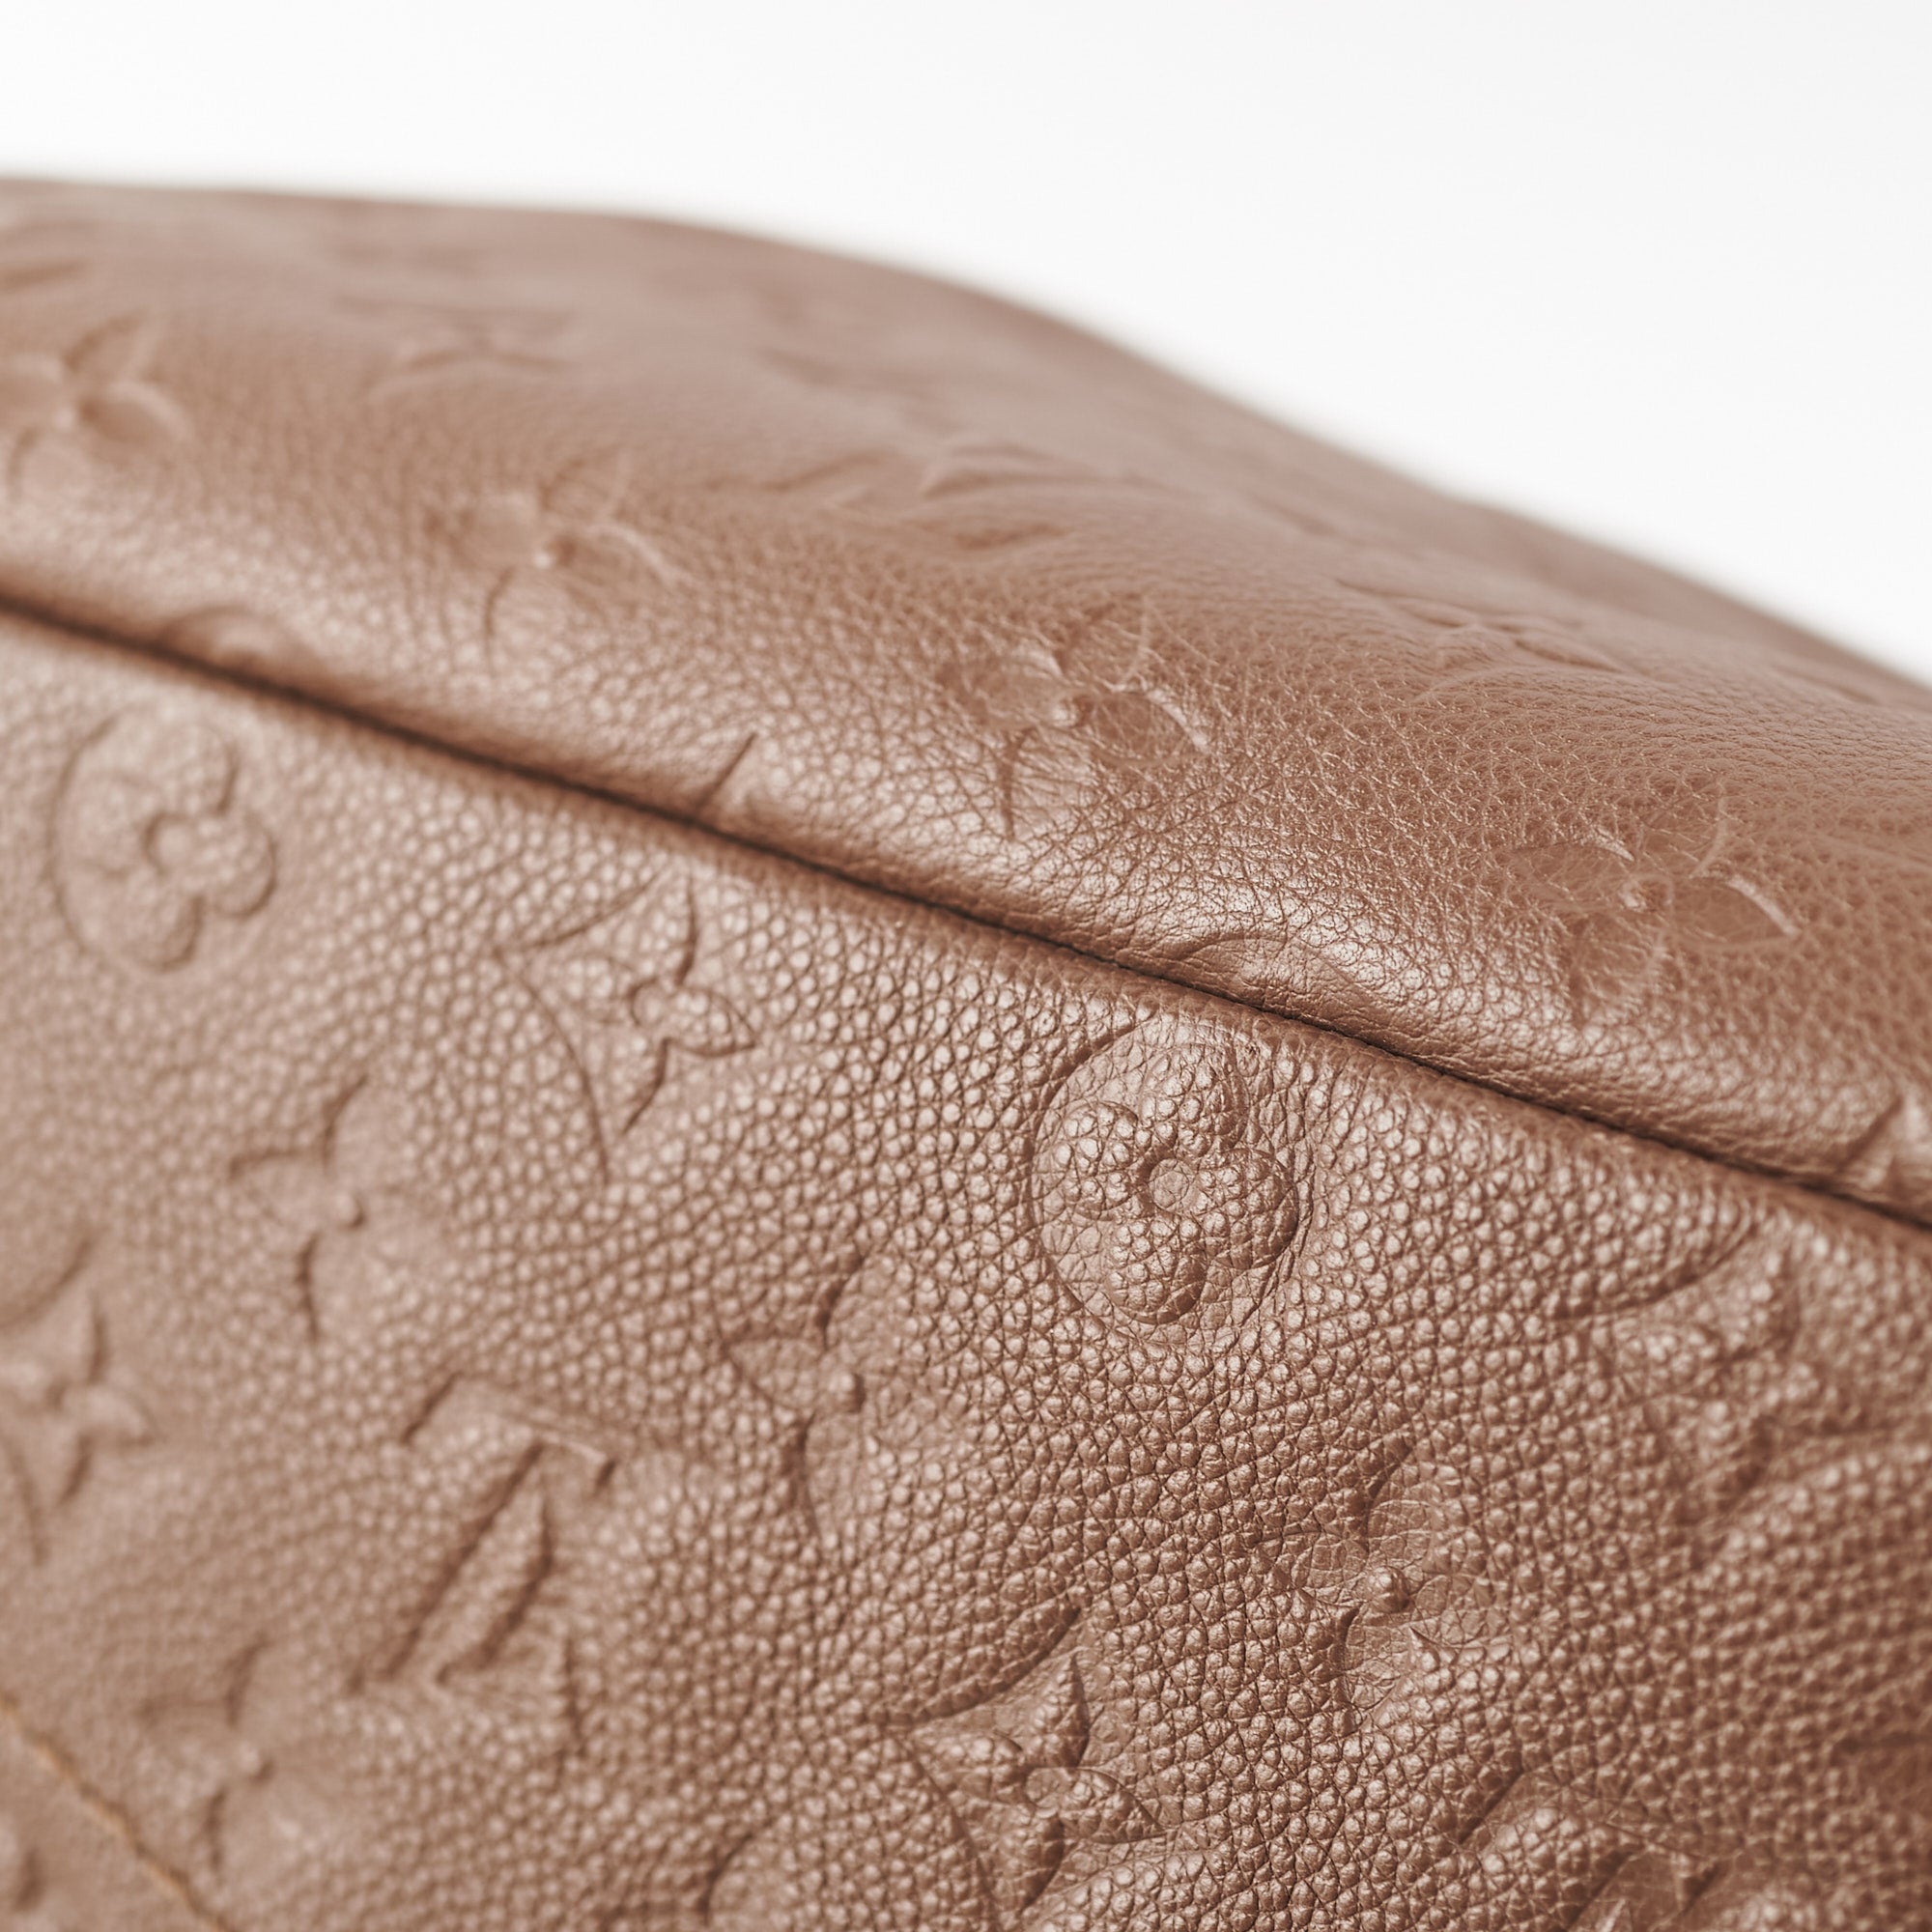 Artsy cloth handbag Louis Vuitton Brown in Cloth - 35925554